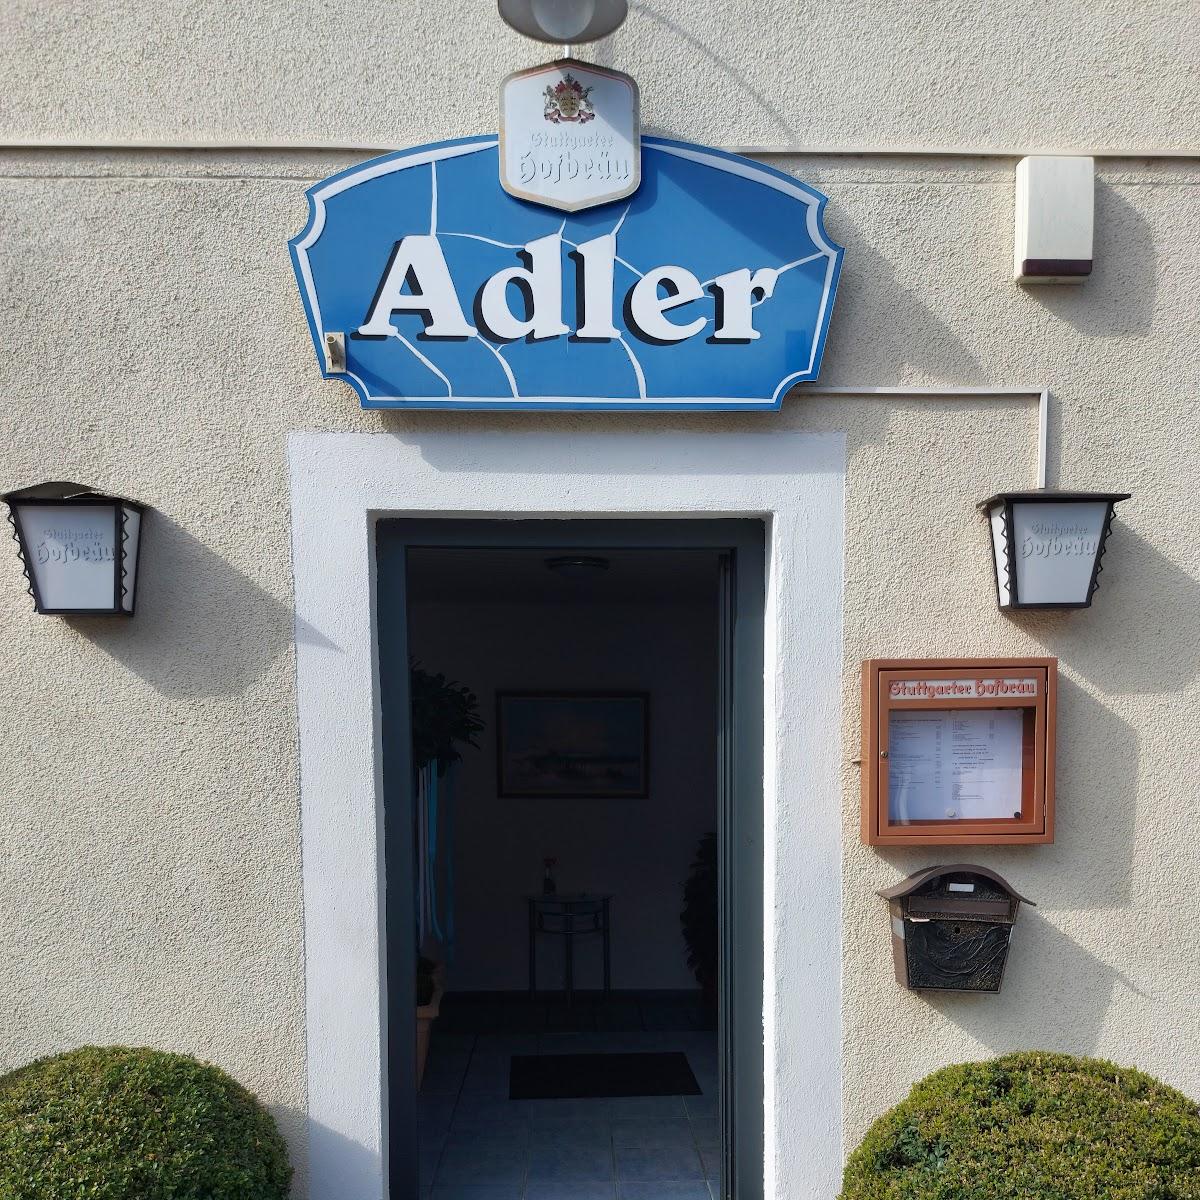 Restaurant "Adler" in Fichtenau